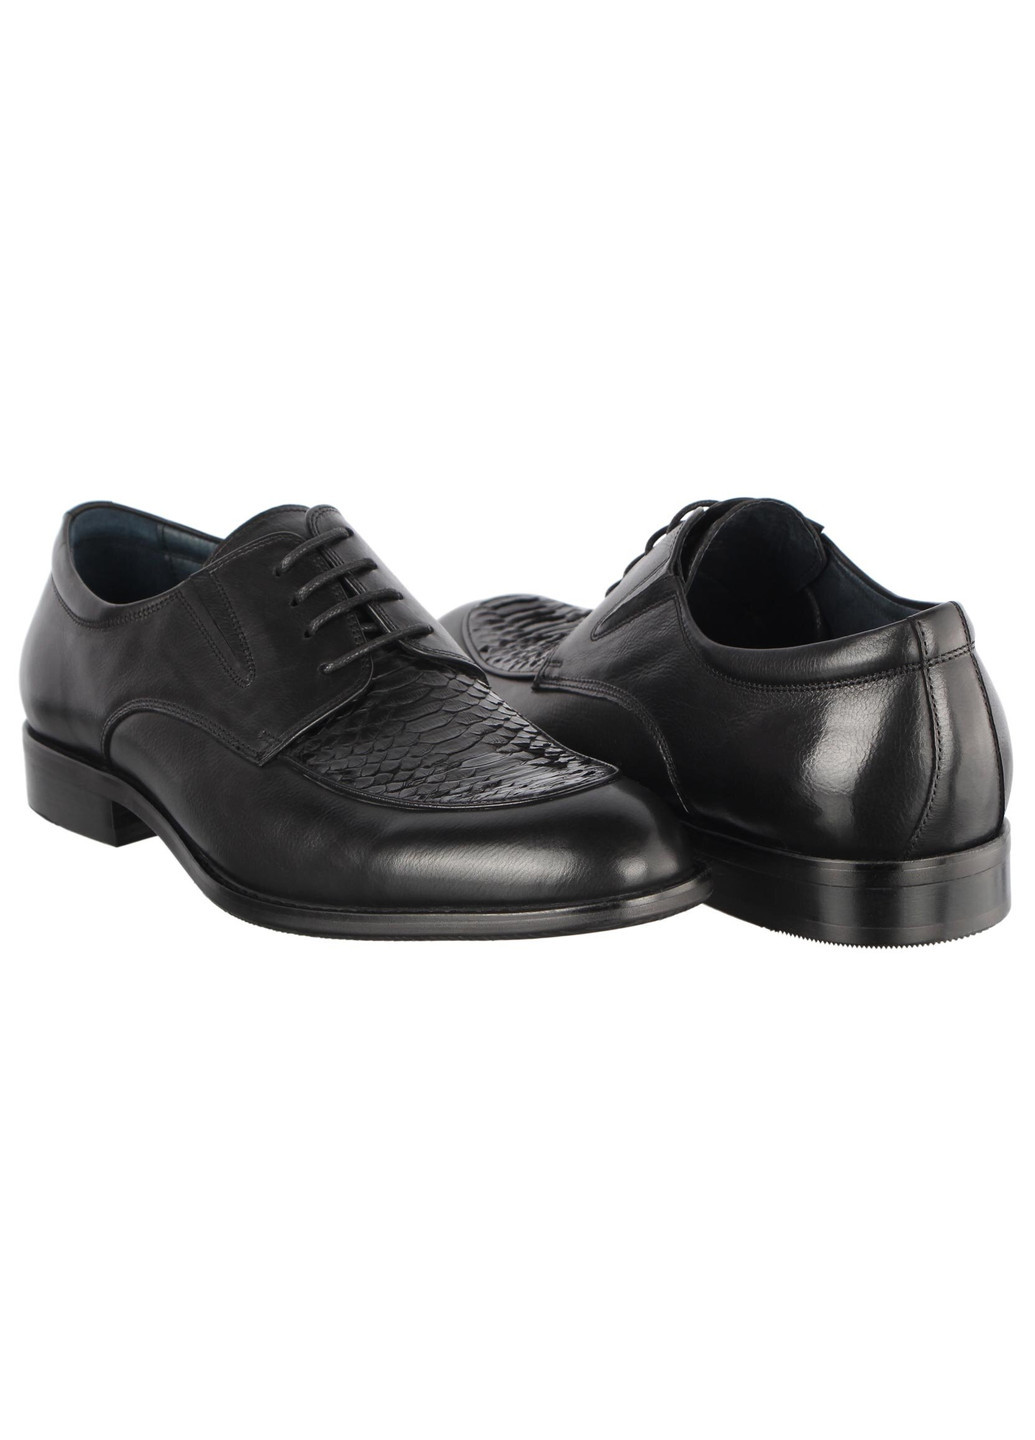 Черные мужские классические туфли 196402 Buts на шнурках